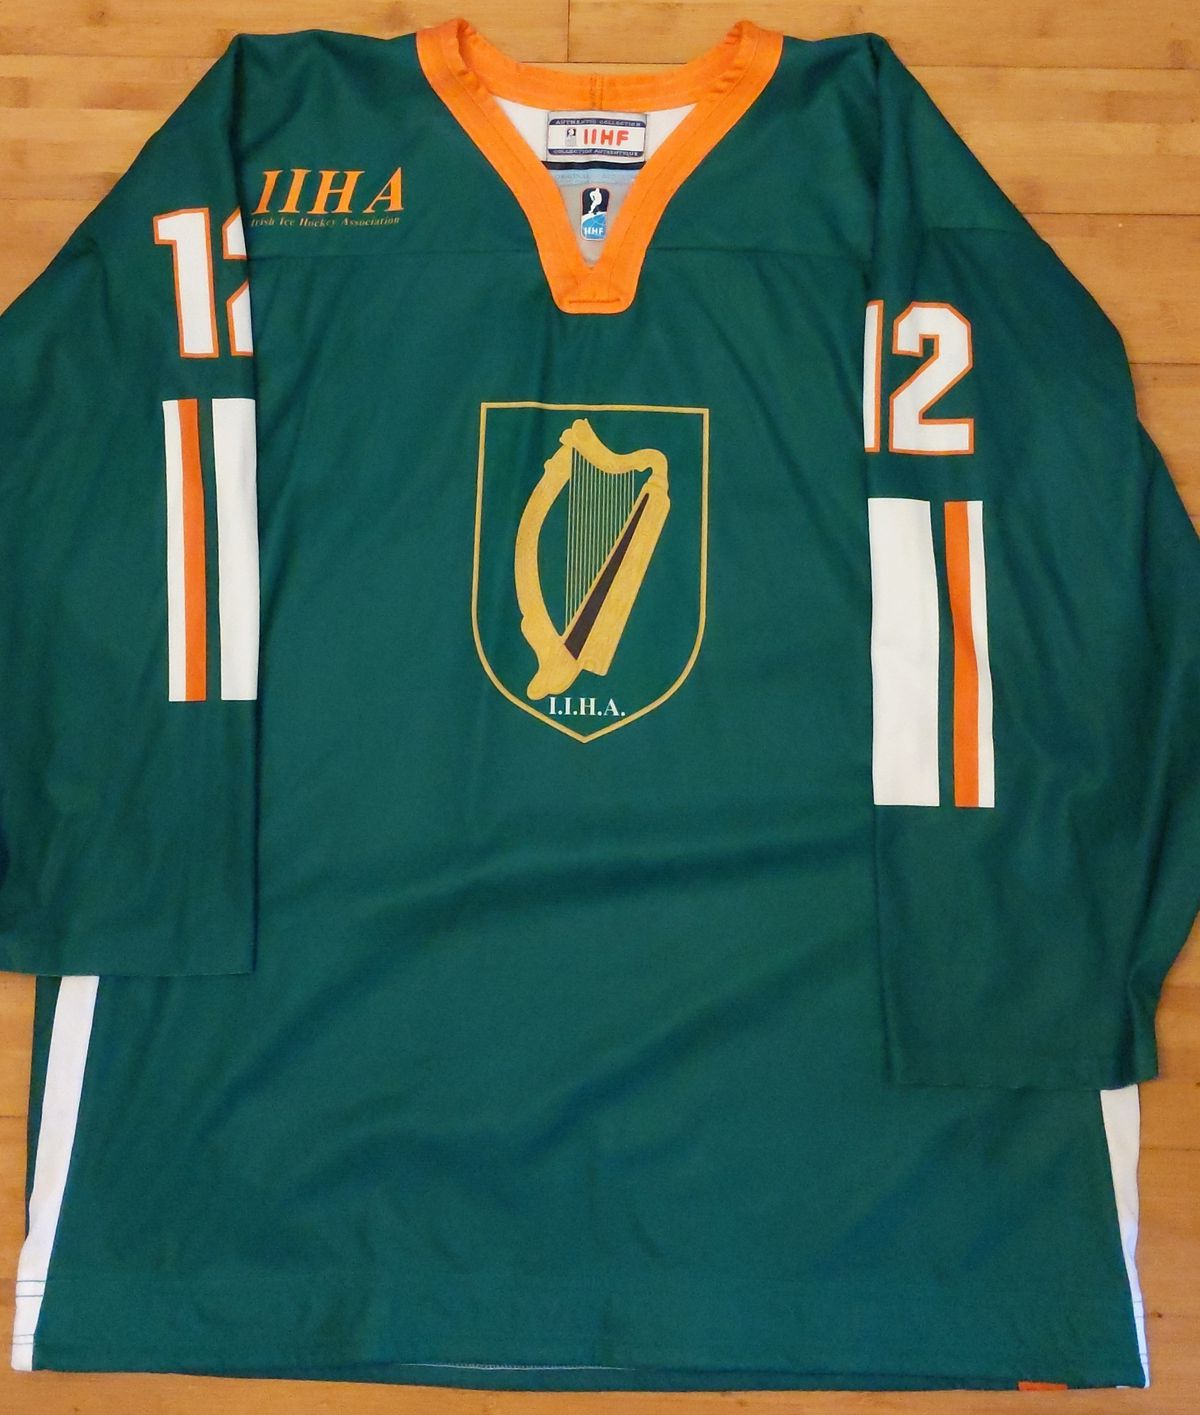 Ireland ice hockey jersey